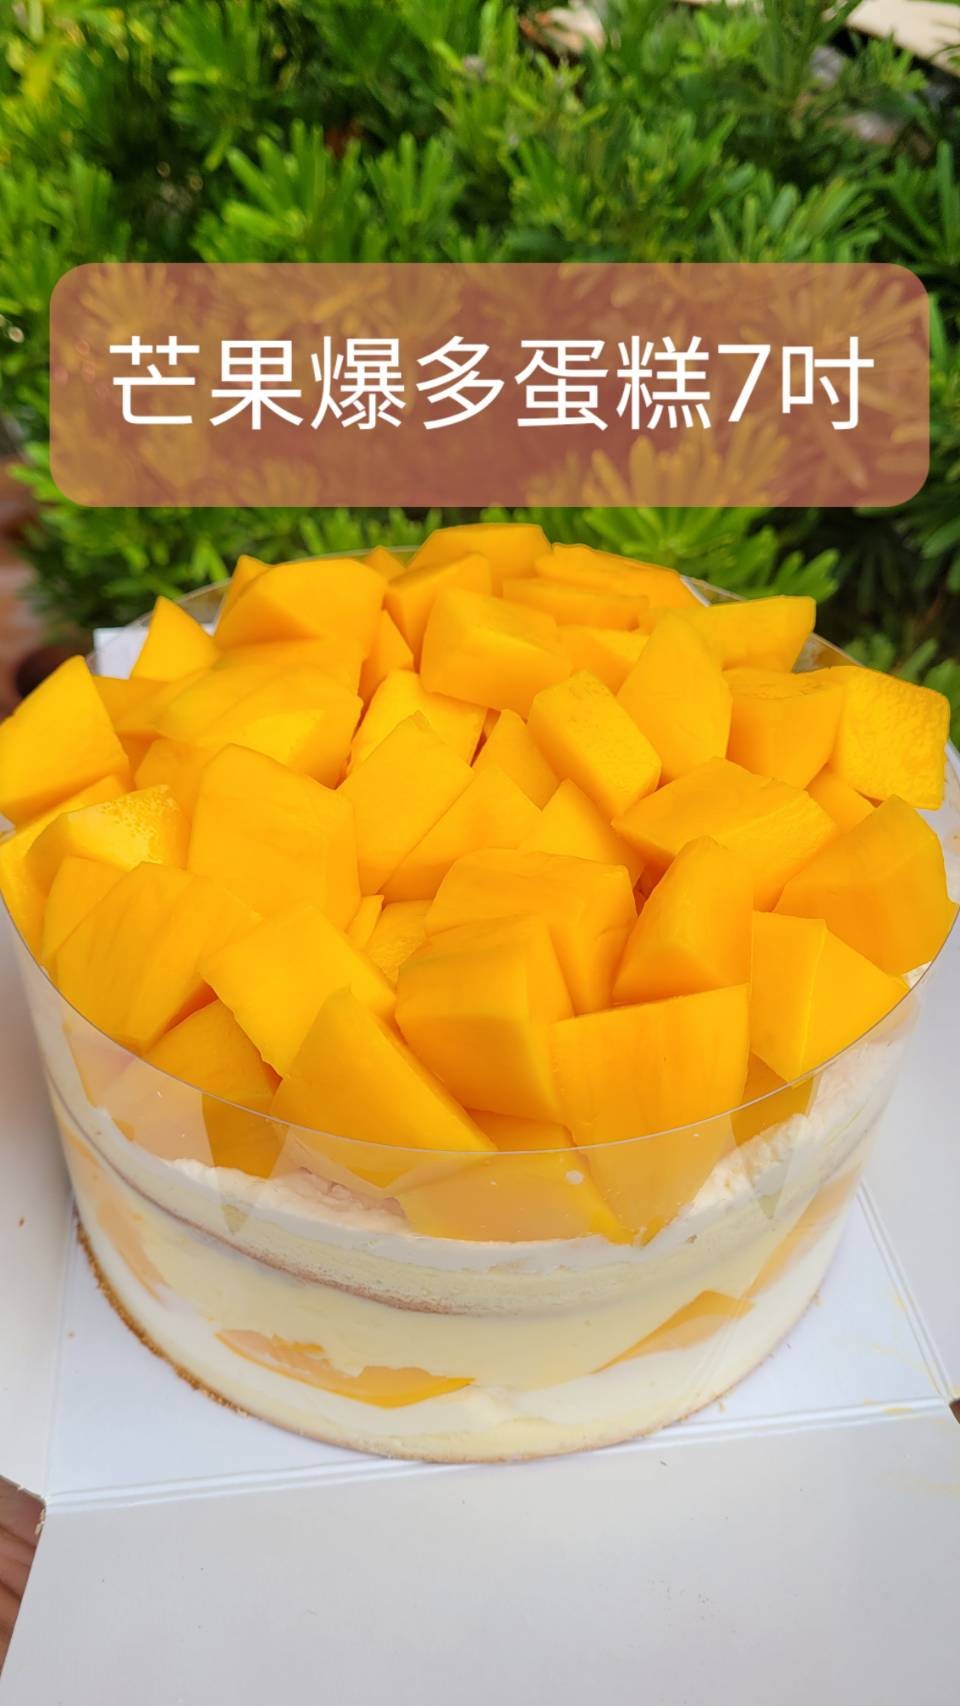 新鮮芒果爆多蛋糕(7吋圓形)